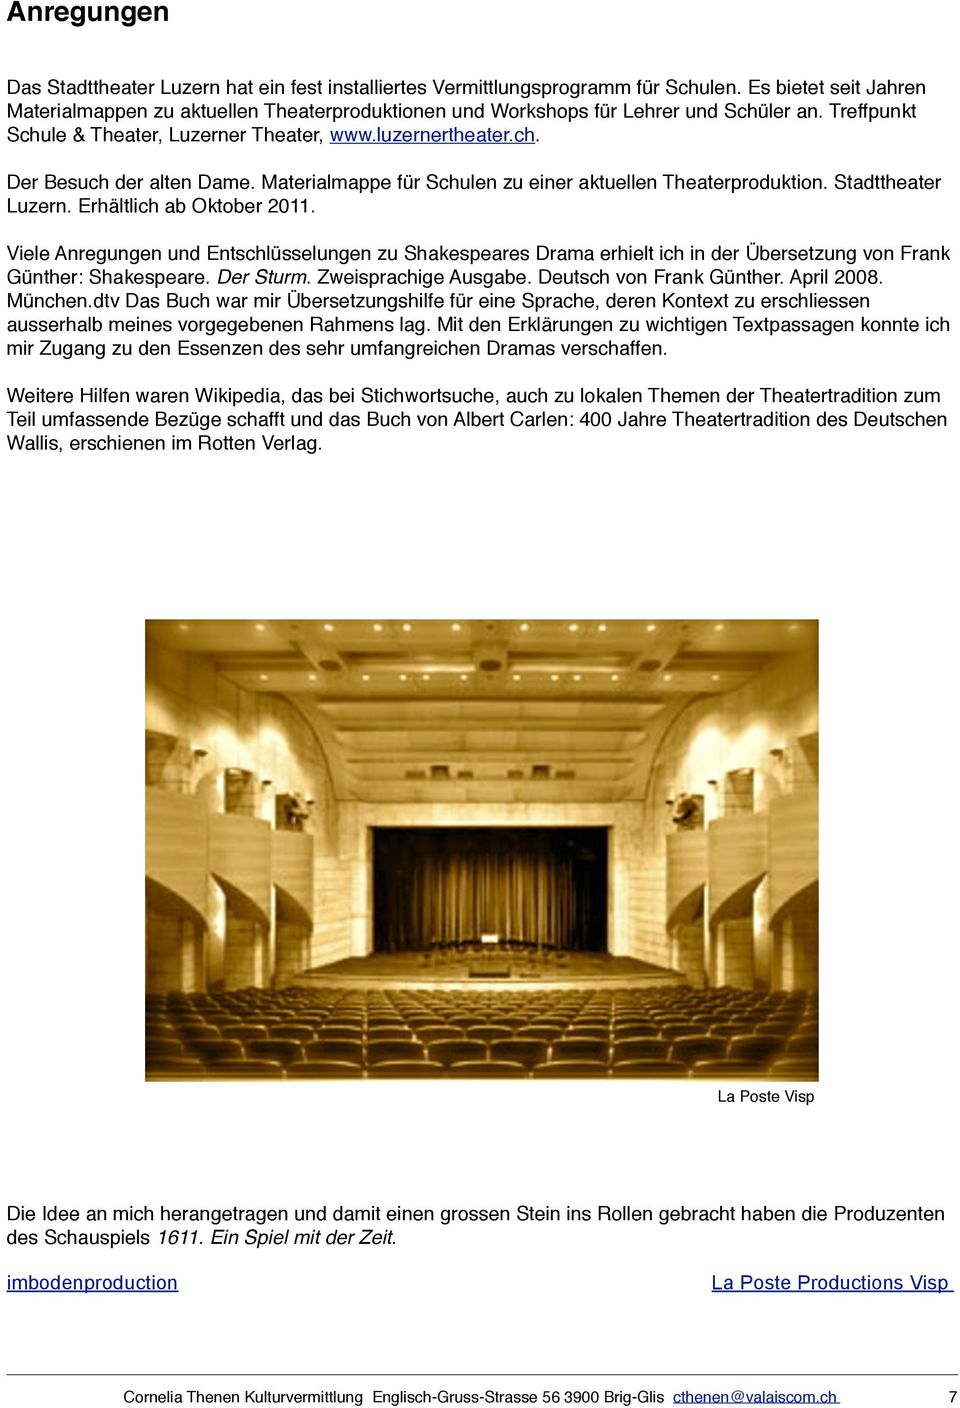 Materialmappe für Schulen zu einer aktuellen Theaterproduktion. Stadttheater Luzern. Erhältlich ab Oktober 2011.